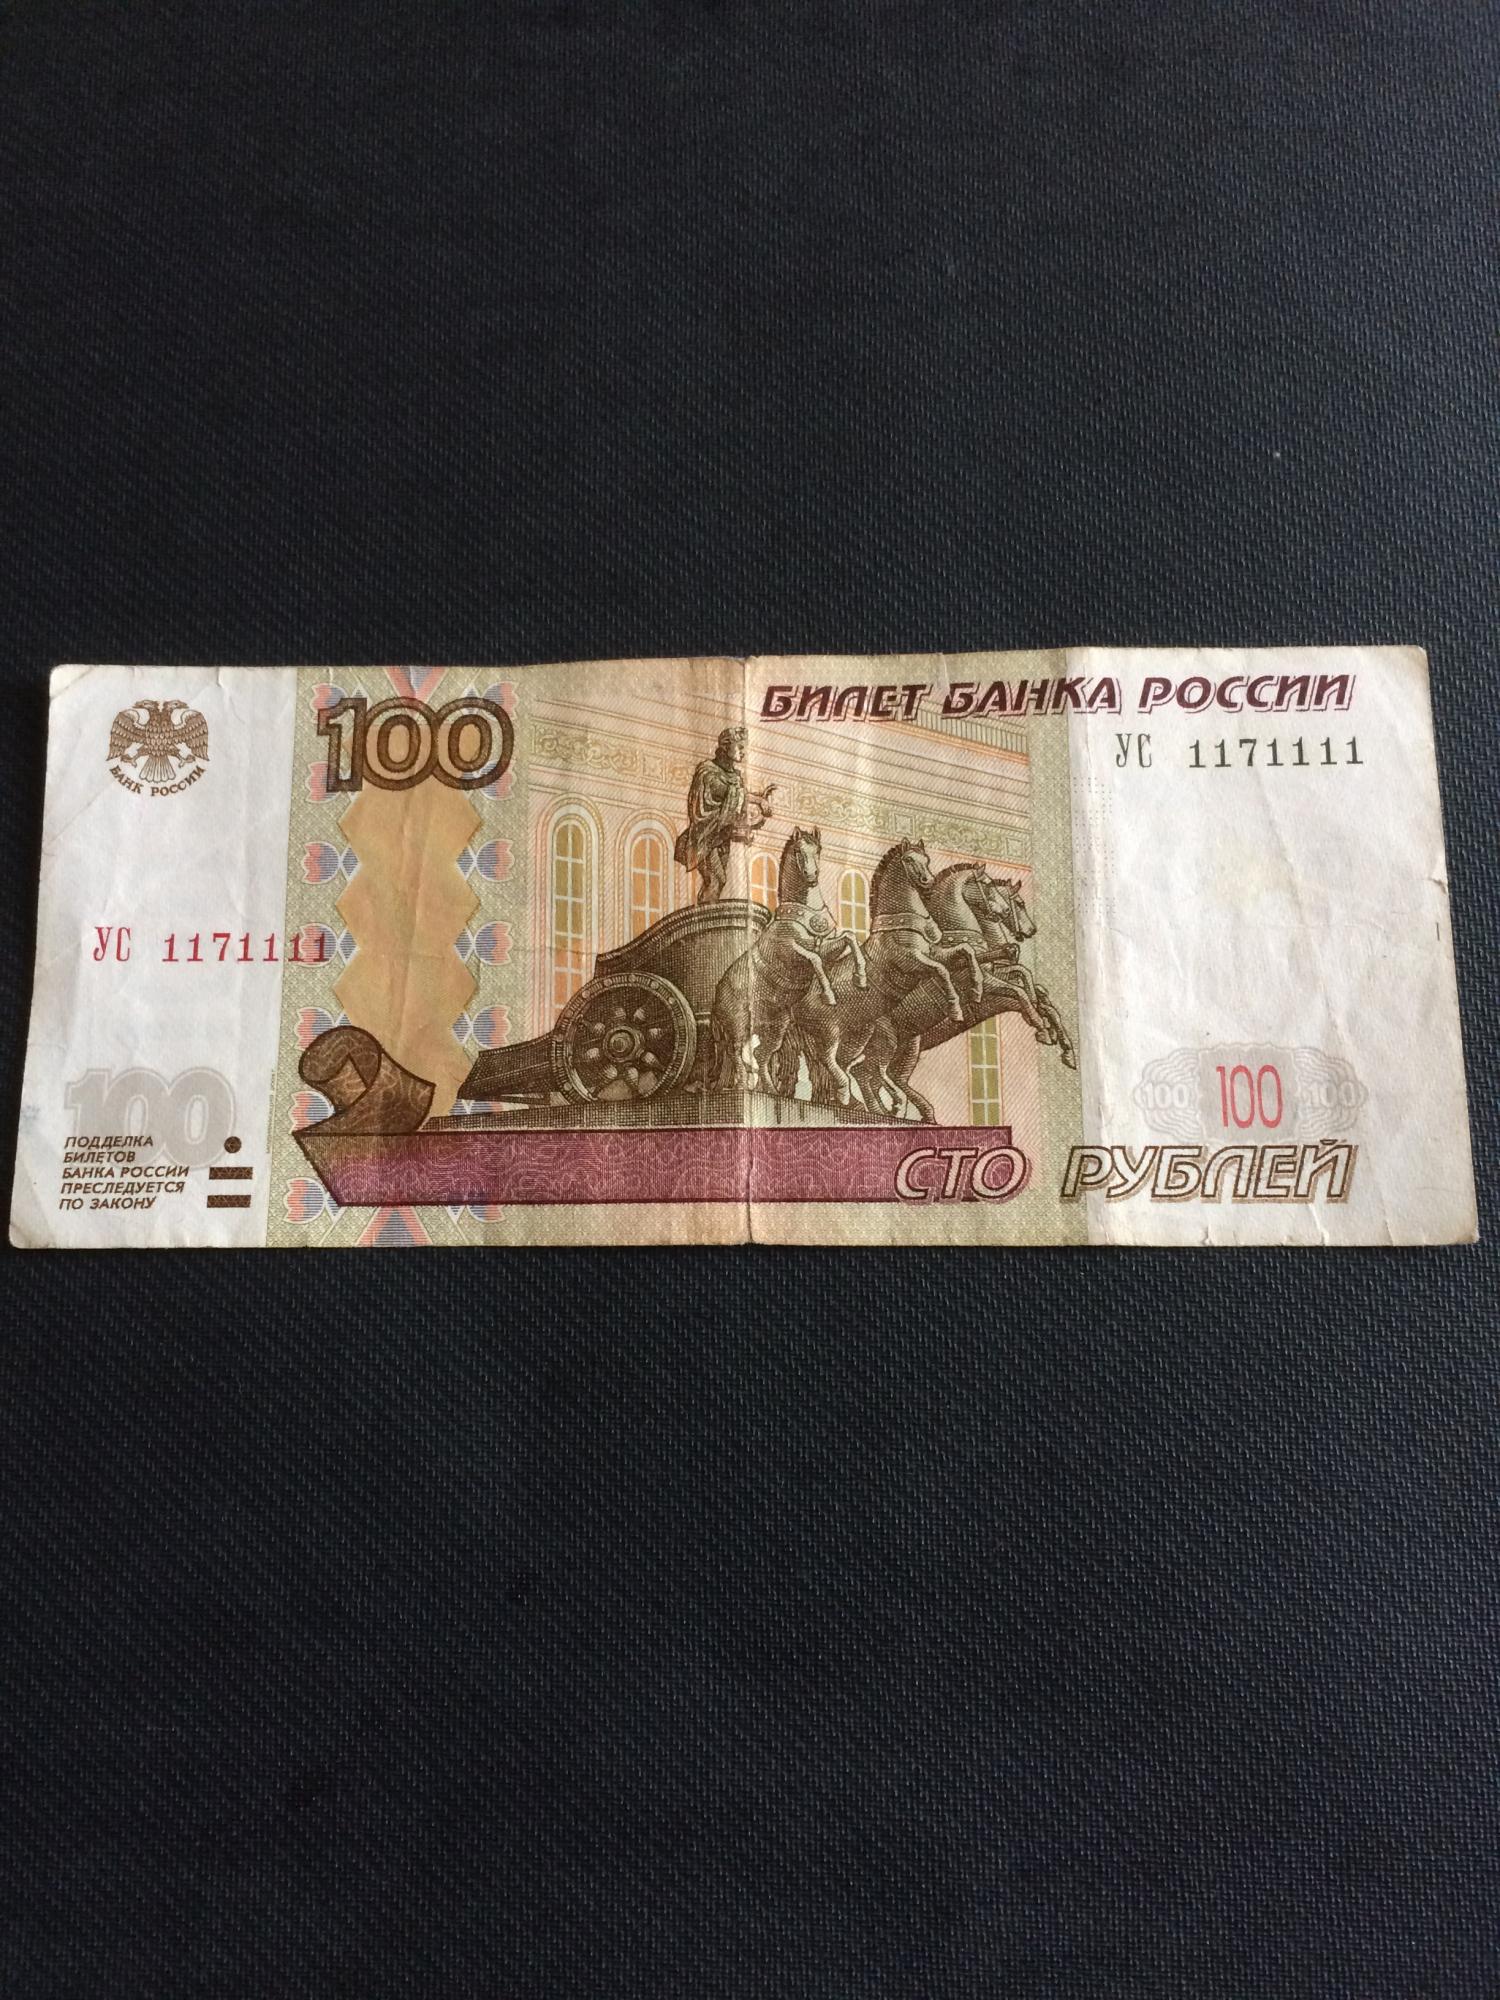 Ваших сто рублей. Купюра 100 рублей. Банкнота 100 рублей. СТО рублей купюра. Купюра 100 иуб.